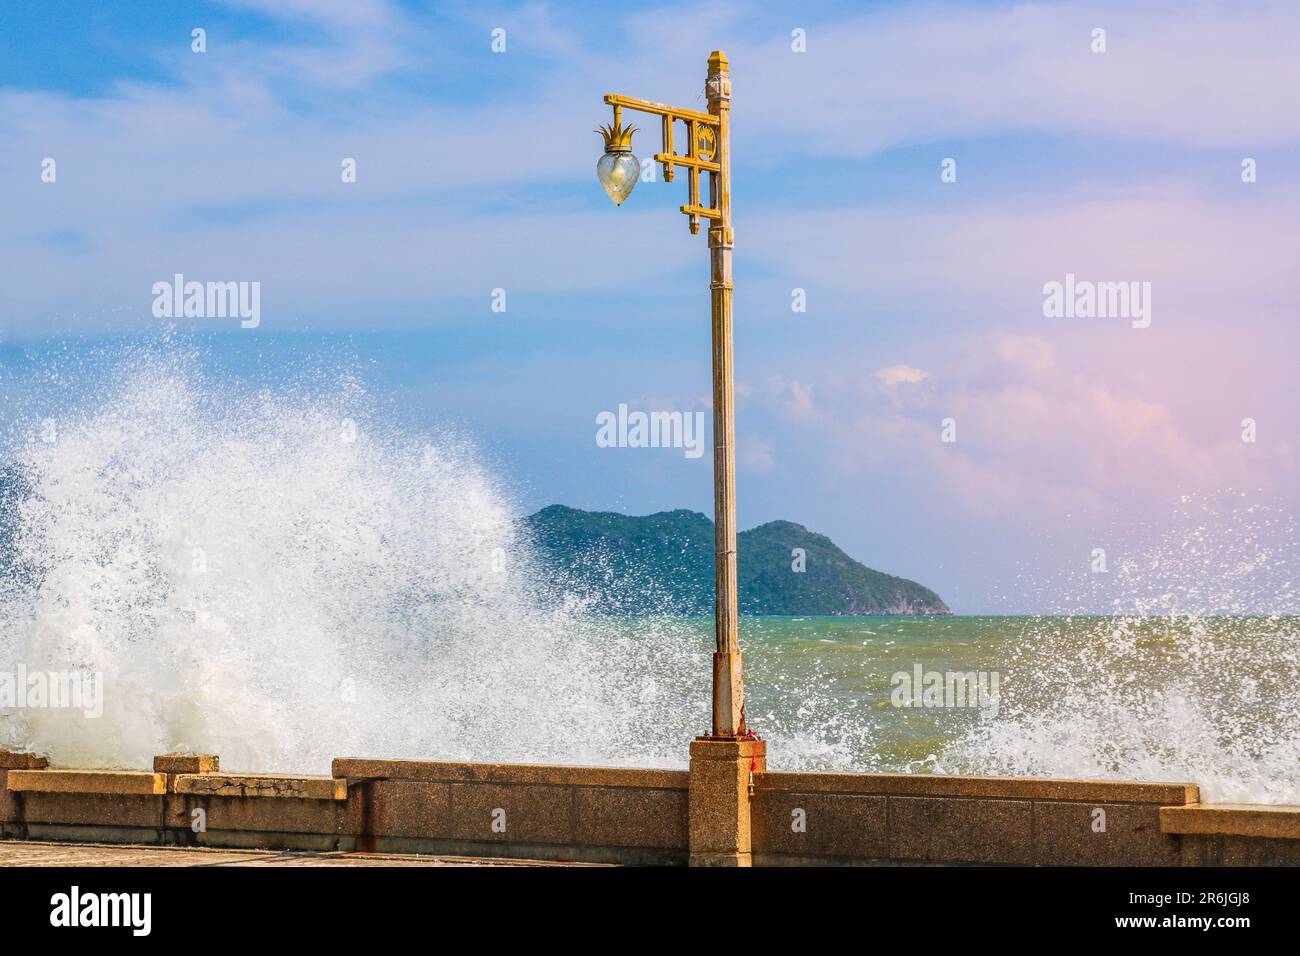 Surf forte, onde alte con spruzzi, un mare infuriato, una lanterna sul terrapieno. Foto Stock